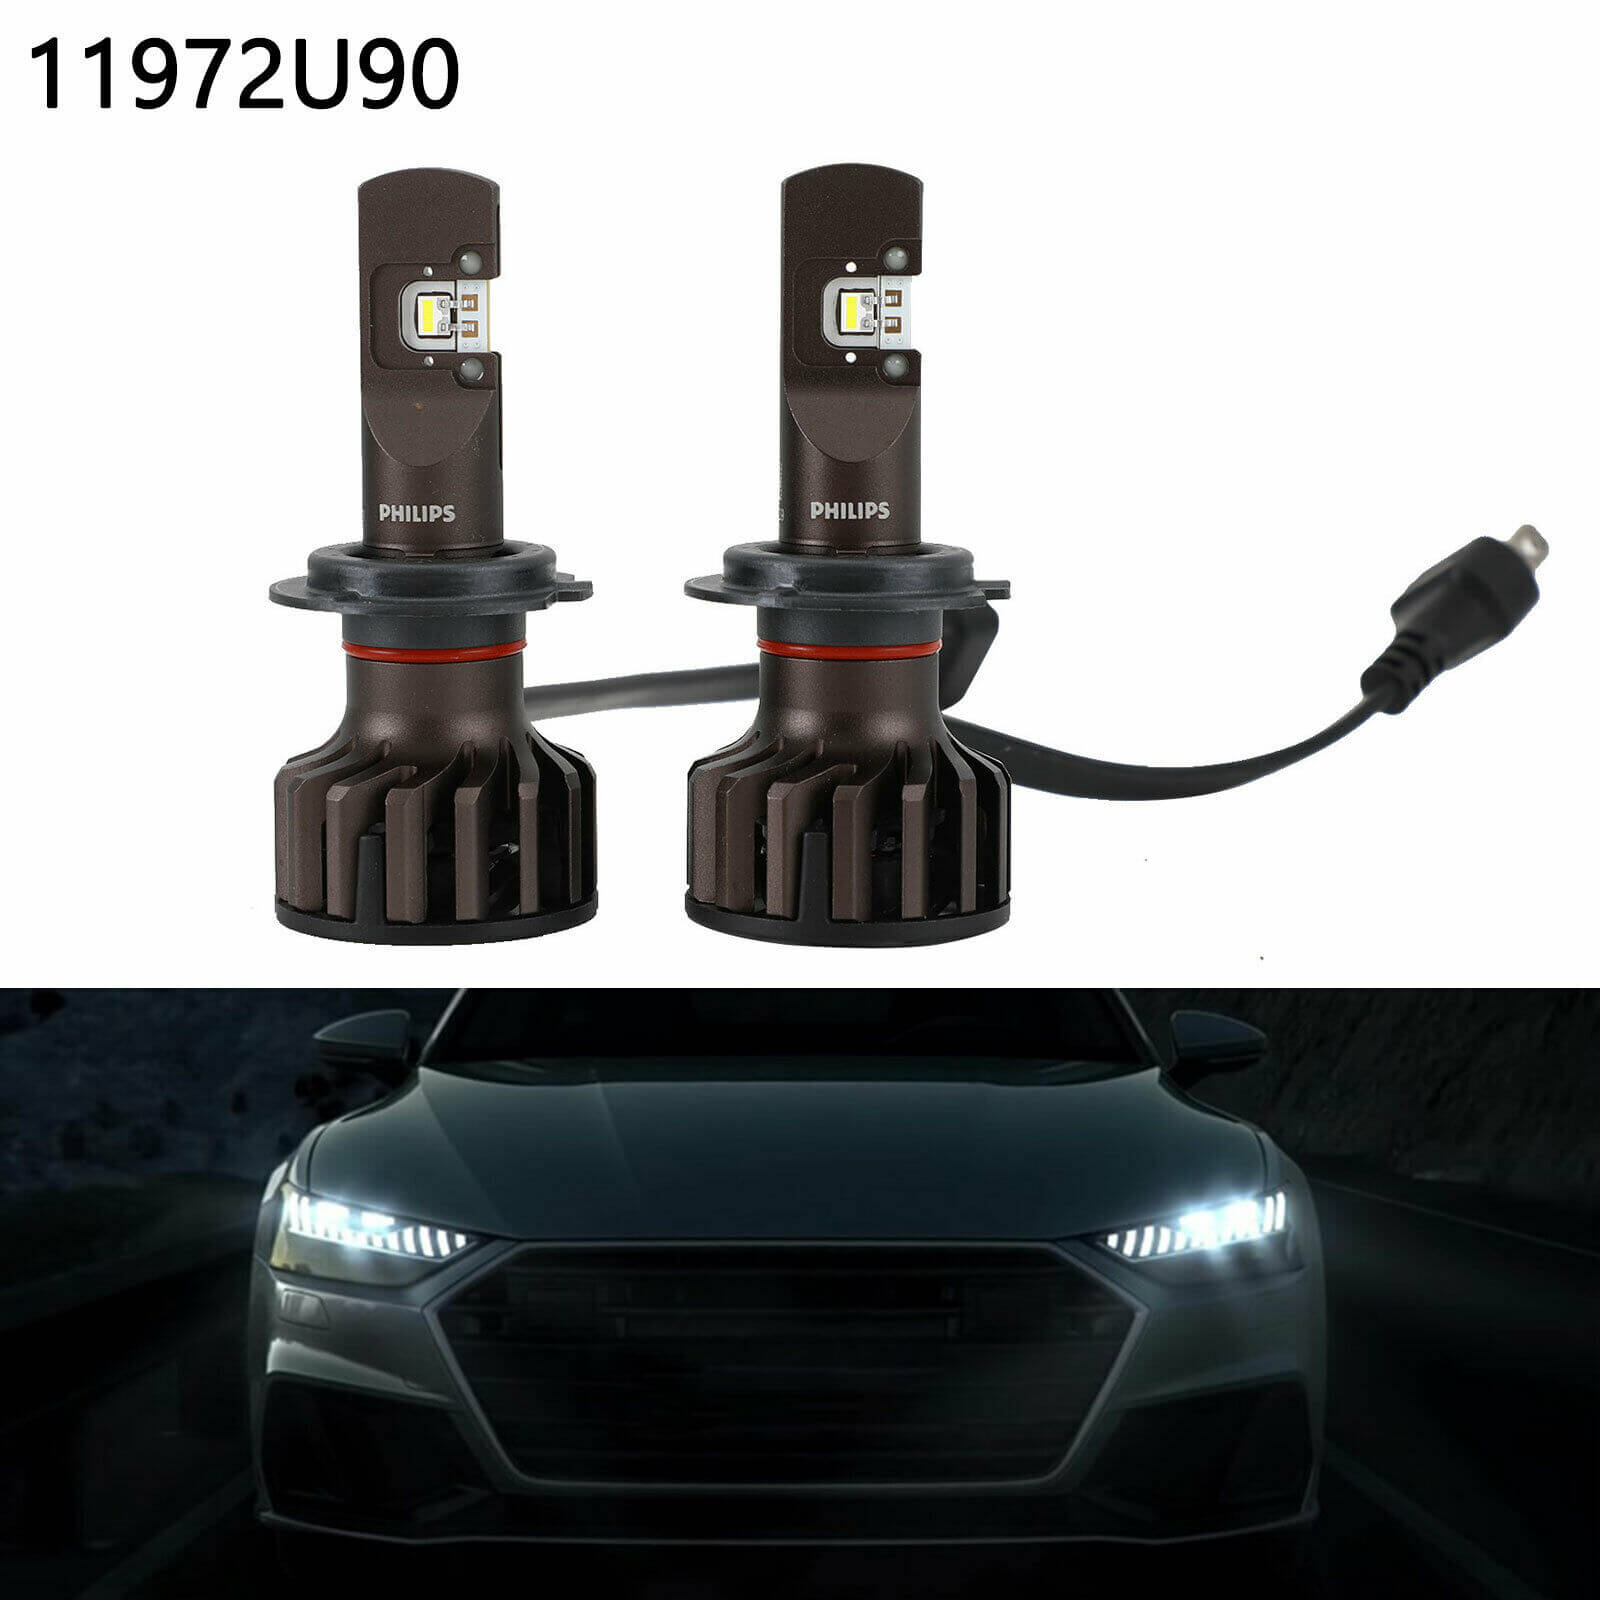 Bóng đèn pha LED Philips H11 Pro 9000 LED 11362 U90 CW X2 tăng sáng 250% cho xe hơi xe ô tô